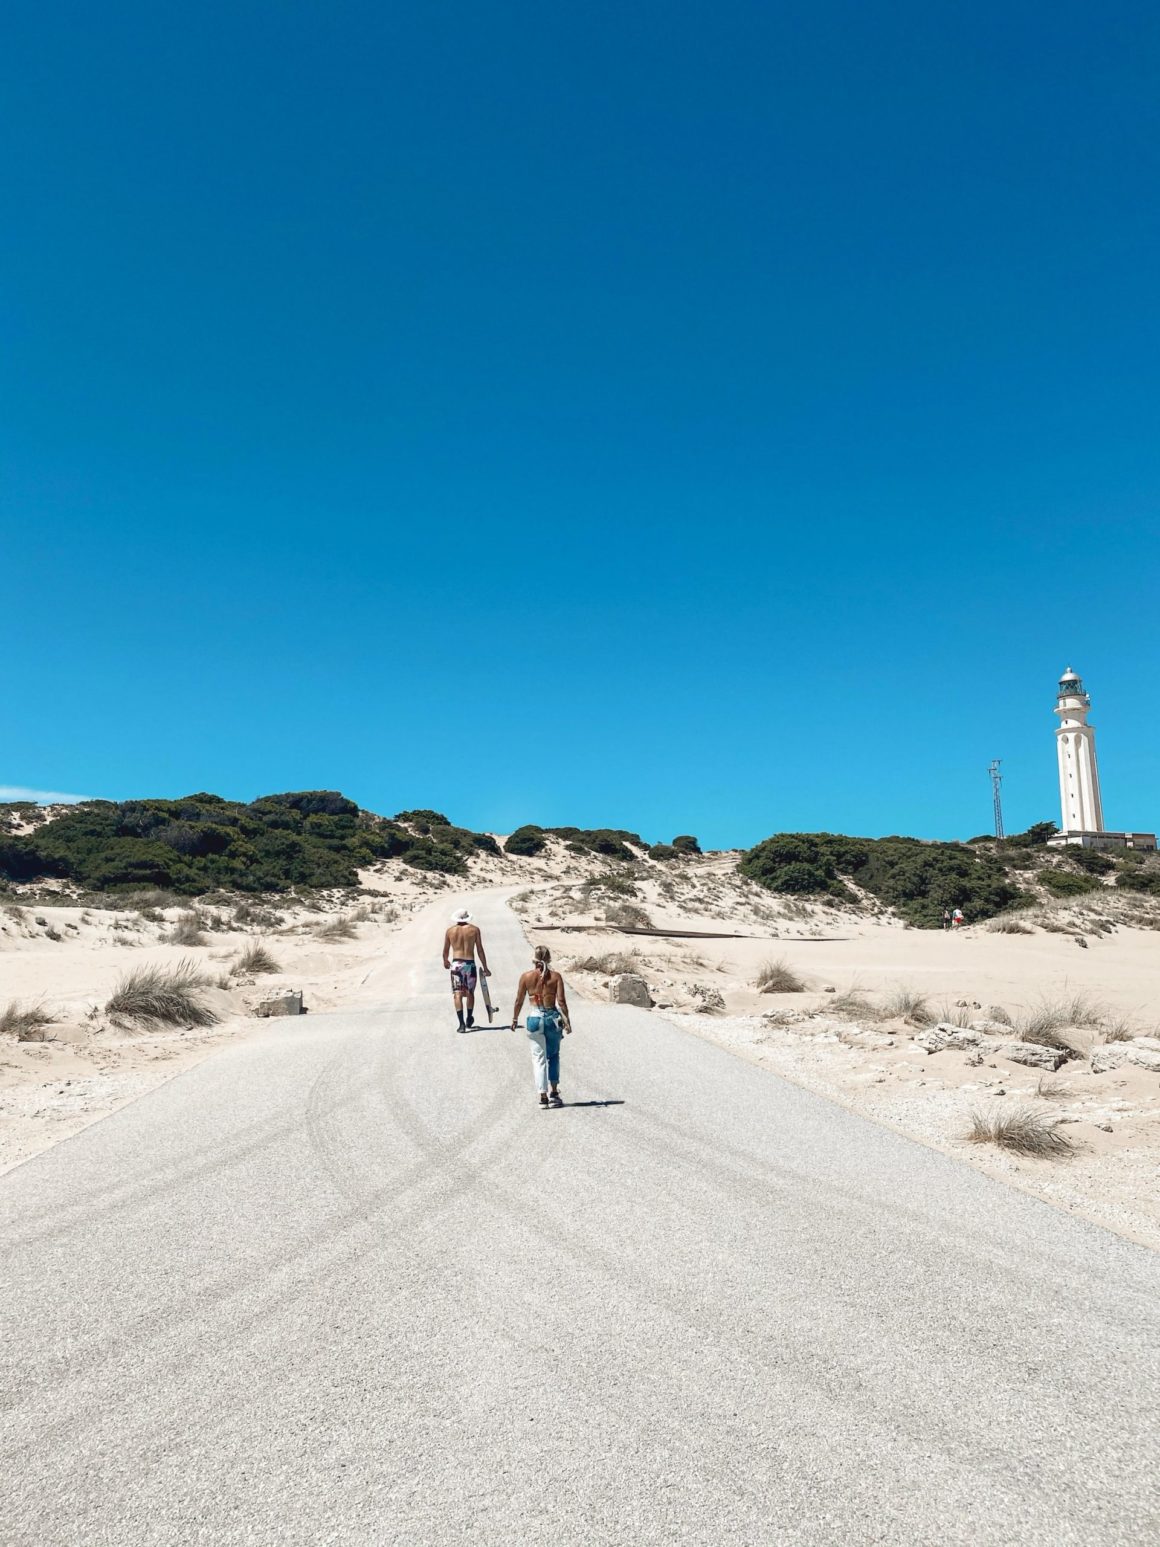 El farp de Trafalgar en los Caños de la Meca, una de las mejores playas de Cádiz